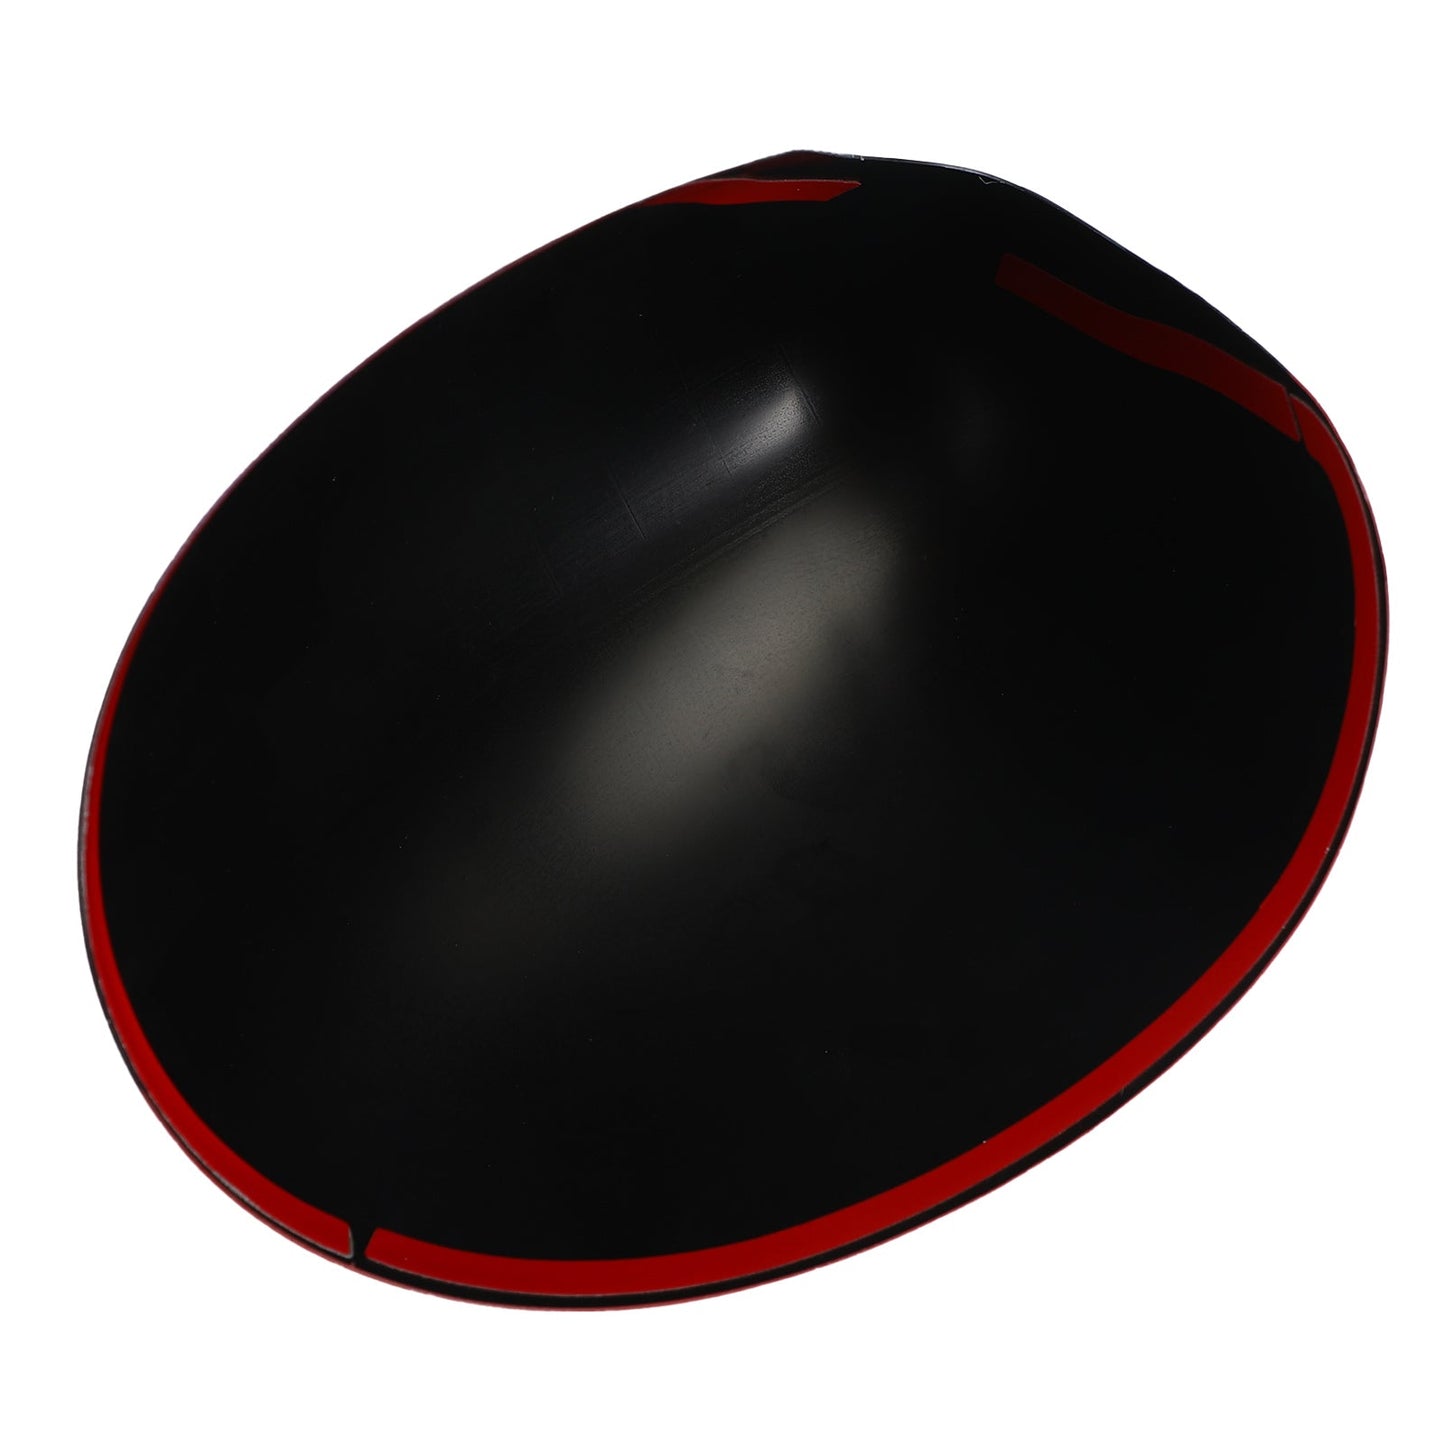 Coques de rétroviseurs rouges à carreaux noirs/gris pour Mini Cooper Hardtop F55 F56